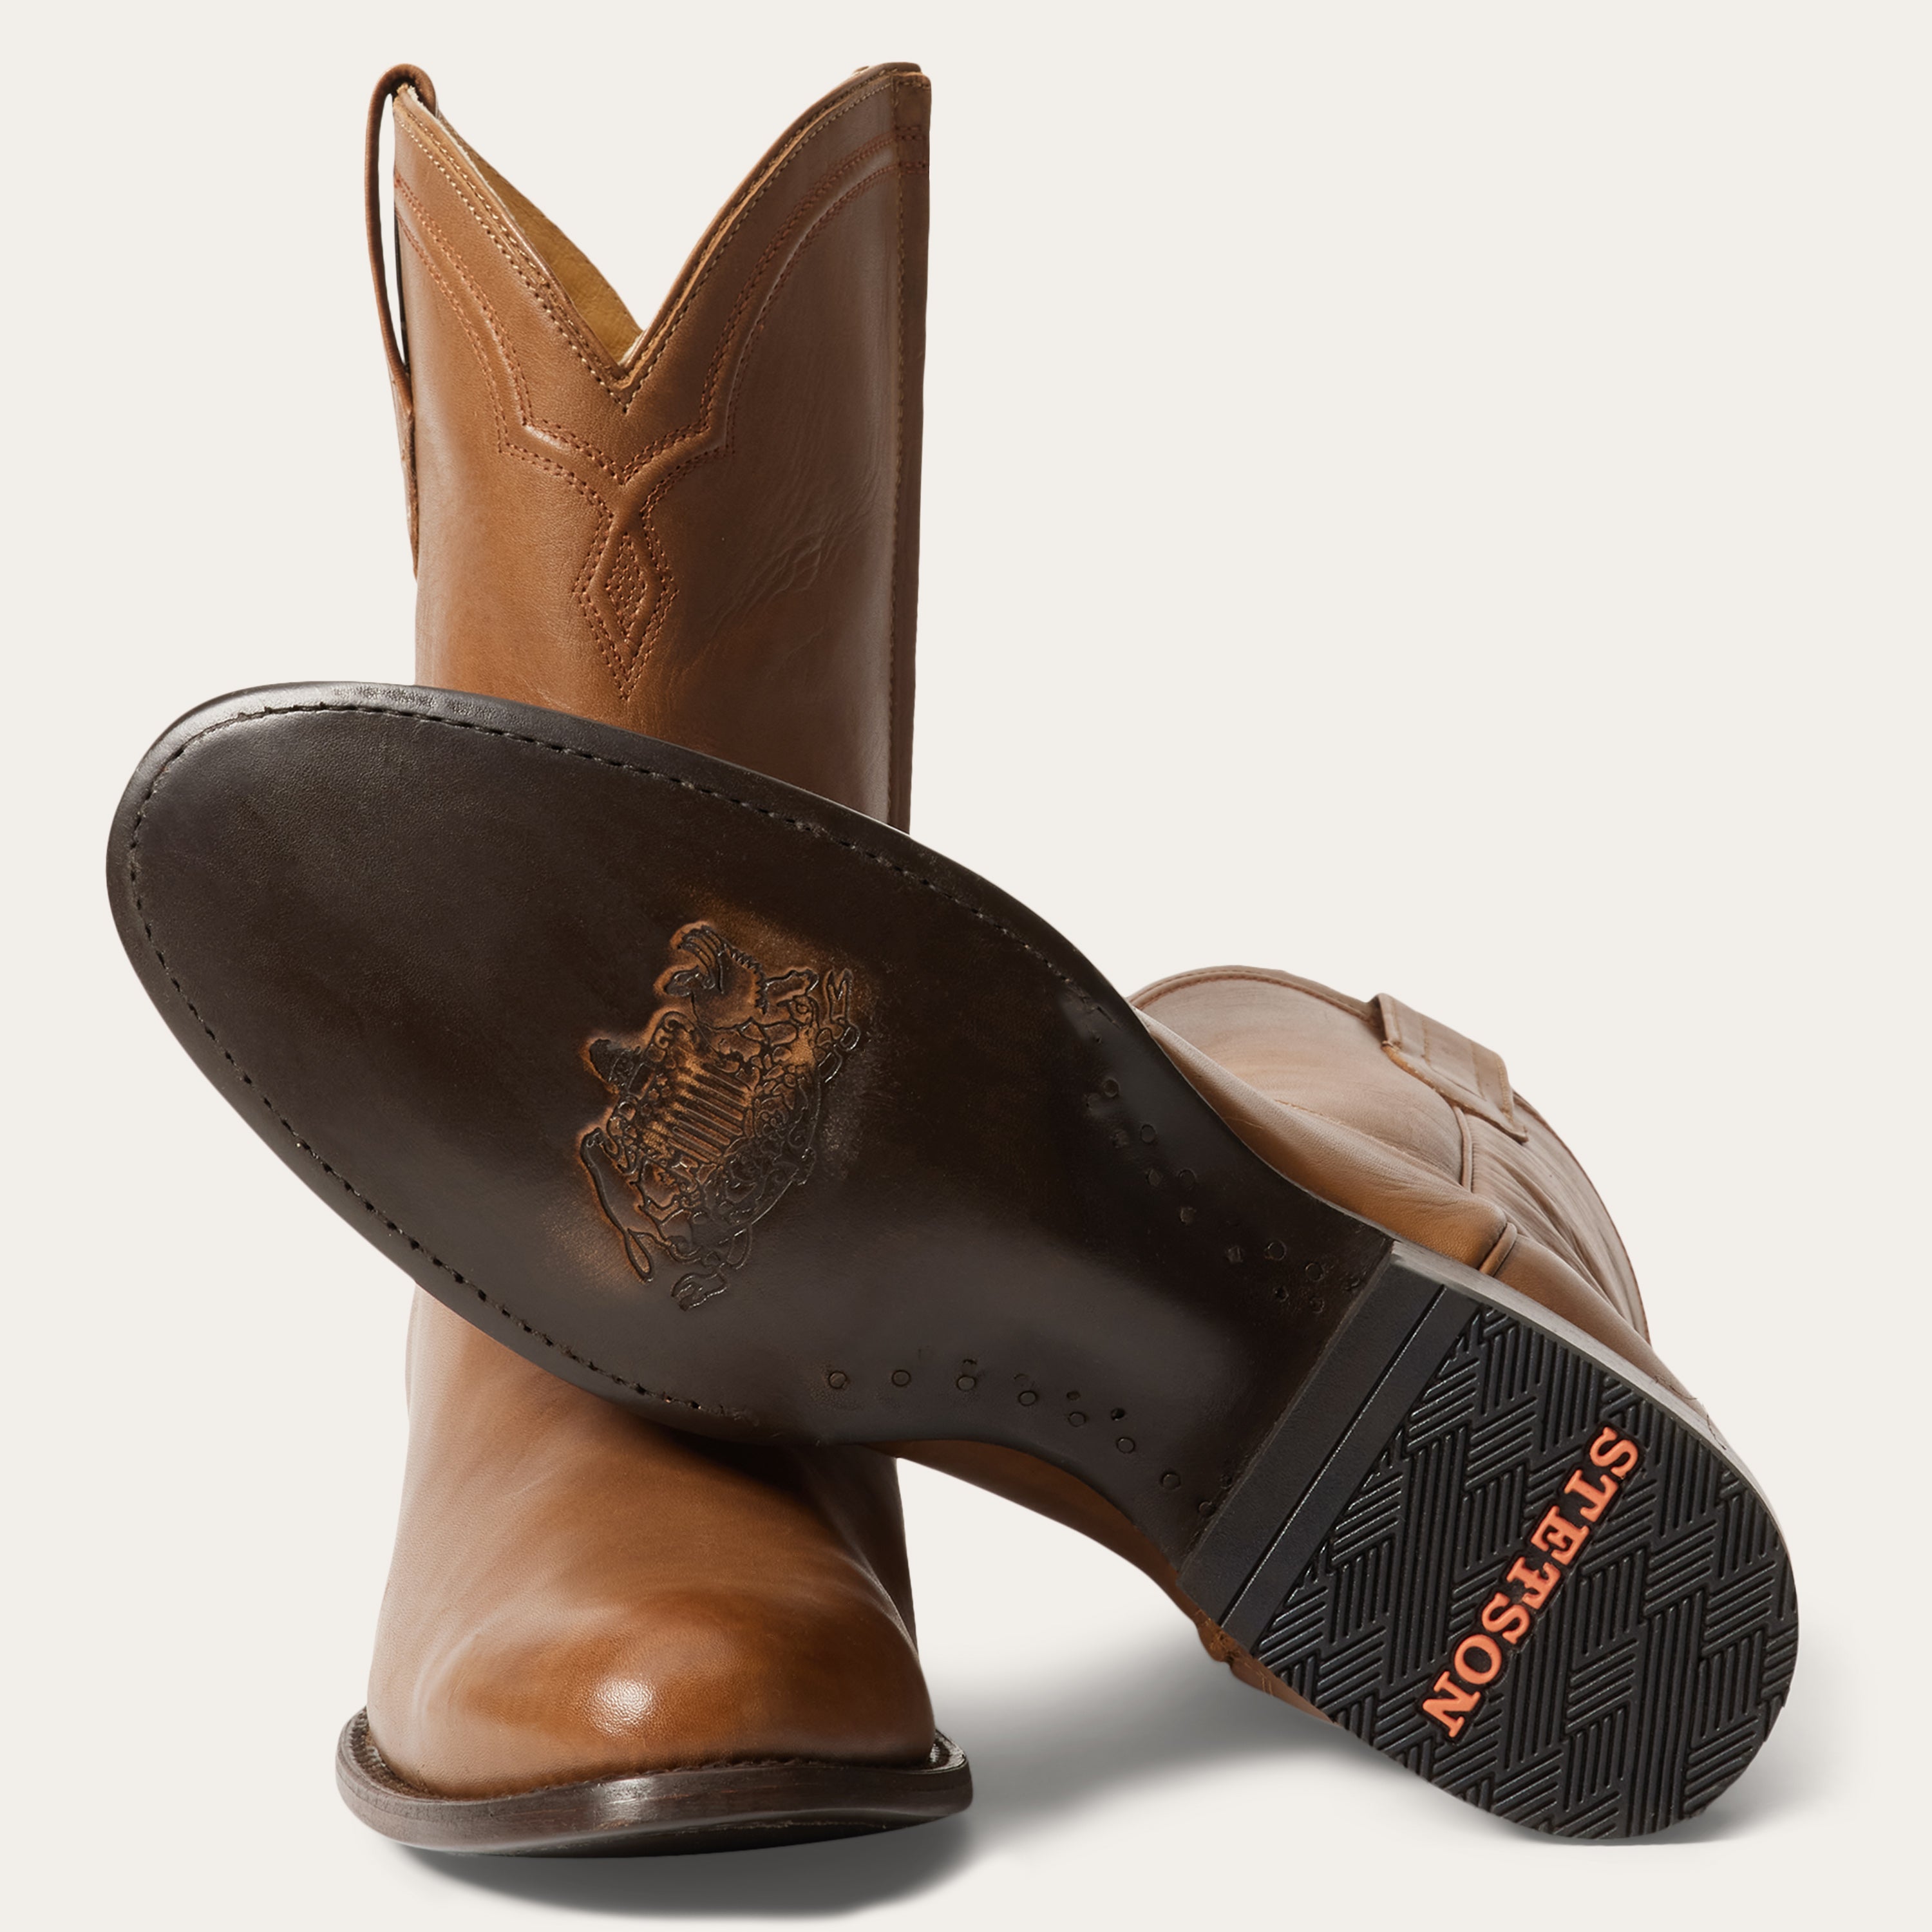 Stetson Rancher Zip Boots